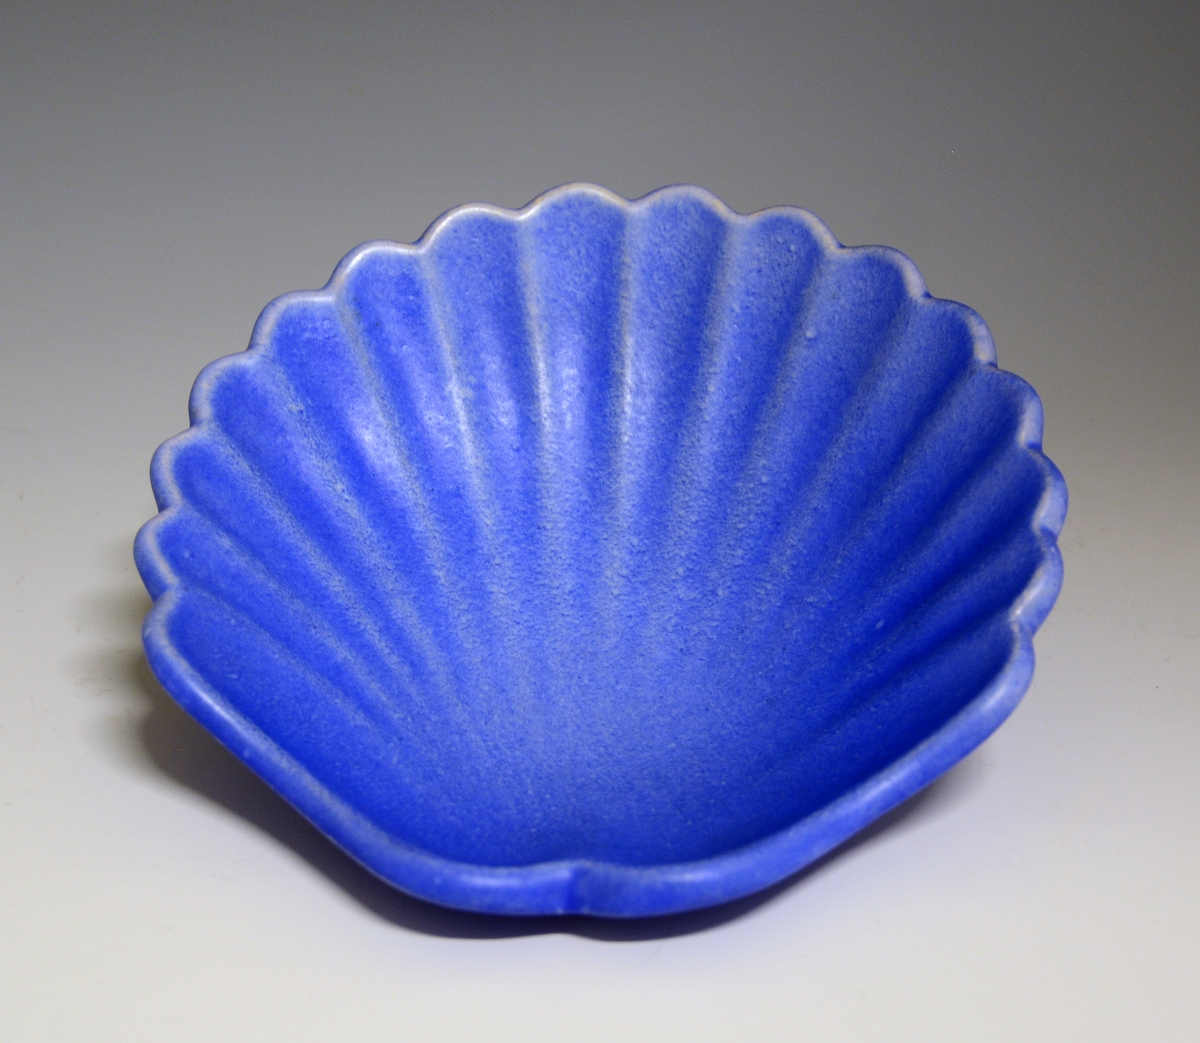 Prot: Skål av "keramikk" formet som et skjell. Blå glasur.

Modell: 5061 
Dekor: 1032